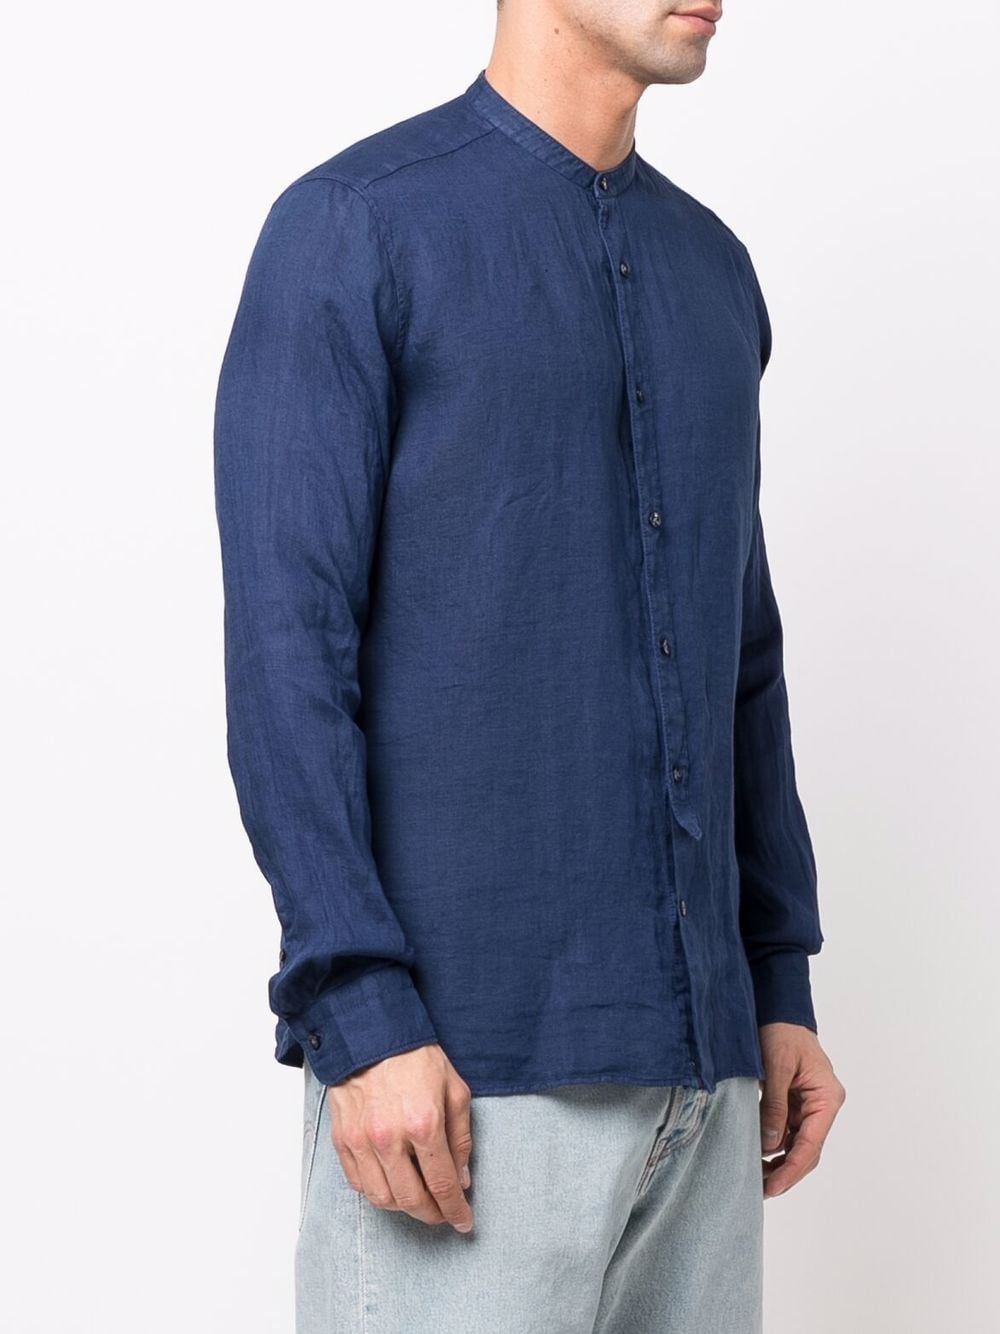 Tintoria Mattei banded-collar Linen Shirt - Farfetch